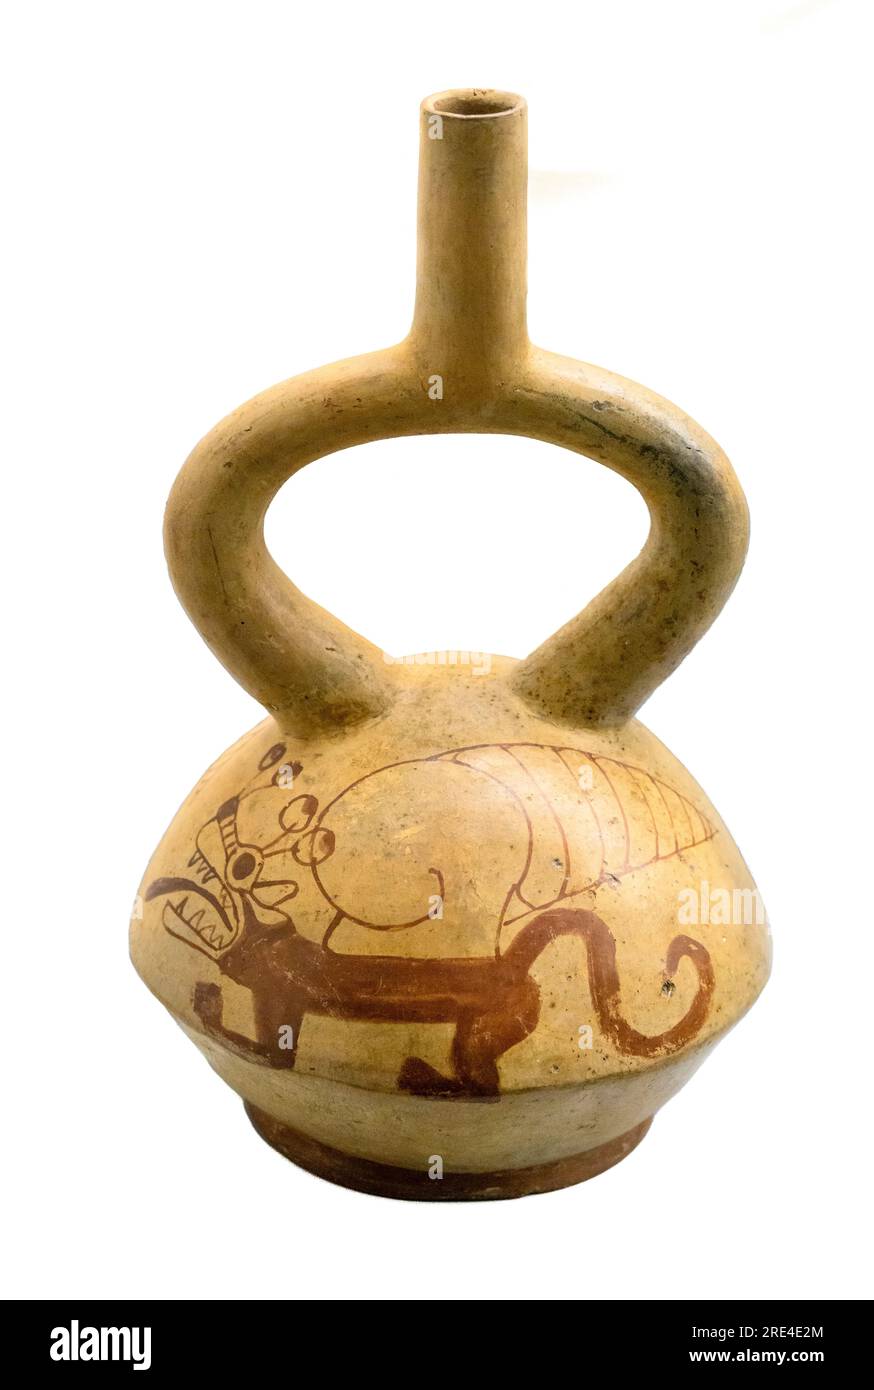 Vaso de cerámica Stirrup-Sout pintado con caracoles y escenas relacionadas con mitos de origen. De la cultura Mochica del Perú. período intermedio temprano be Foto de stock